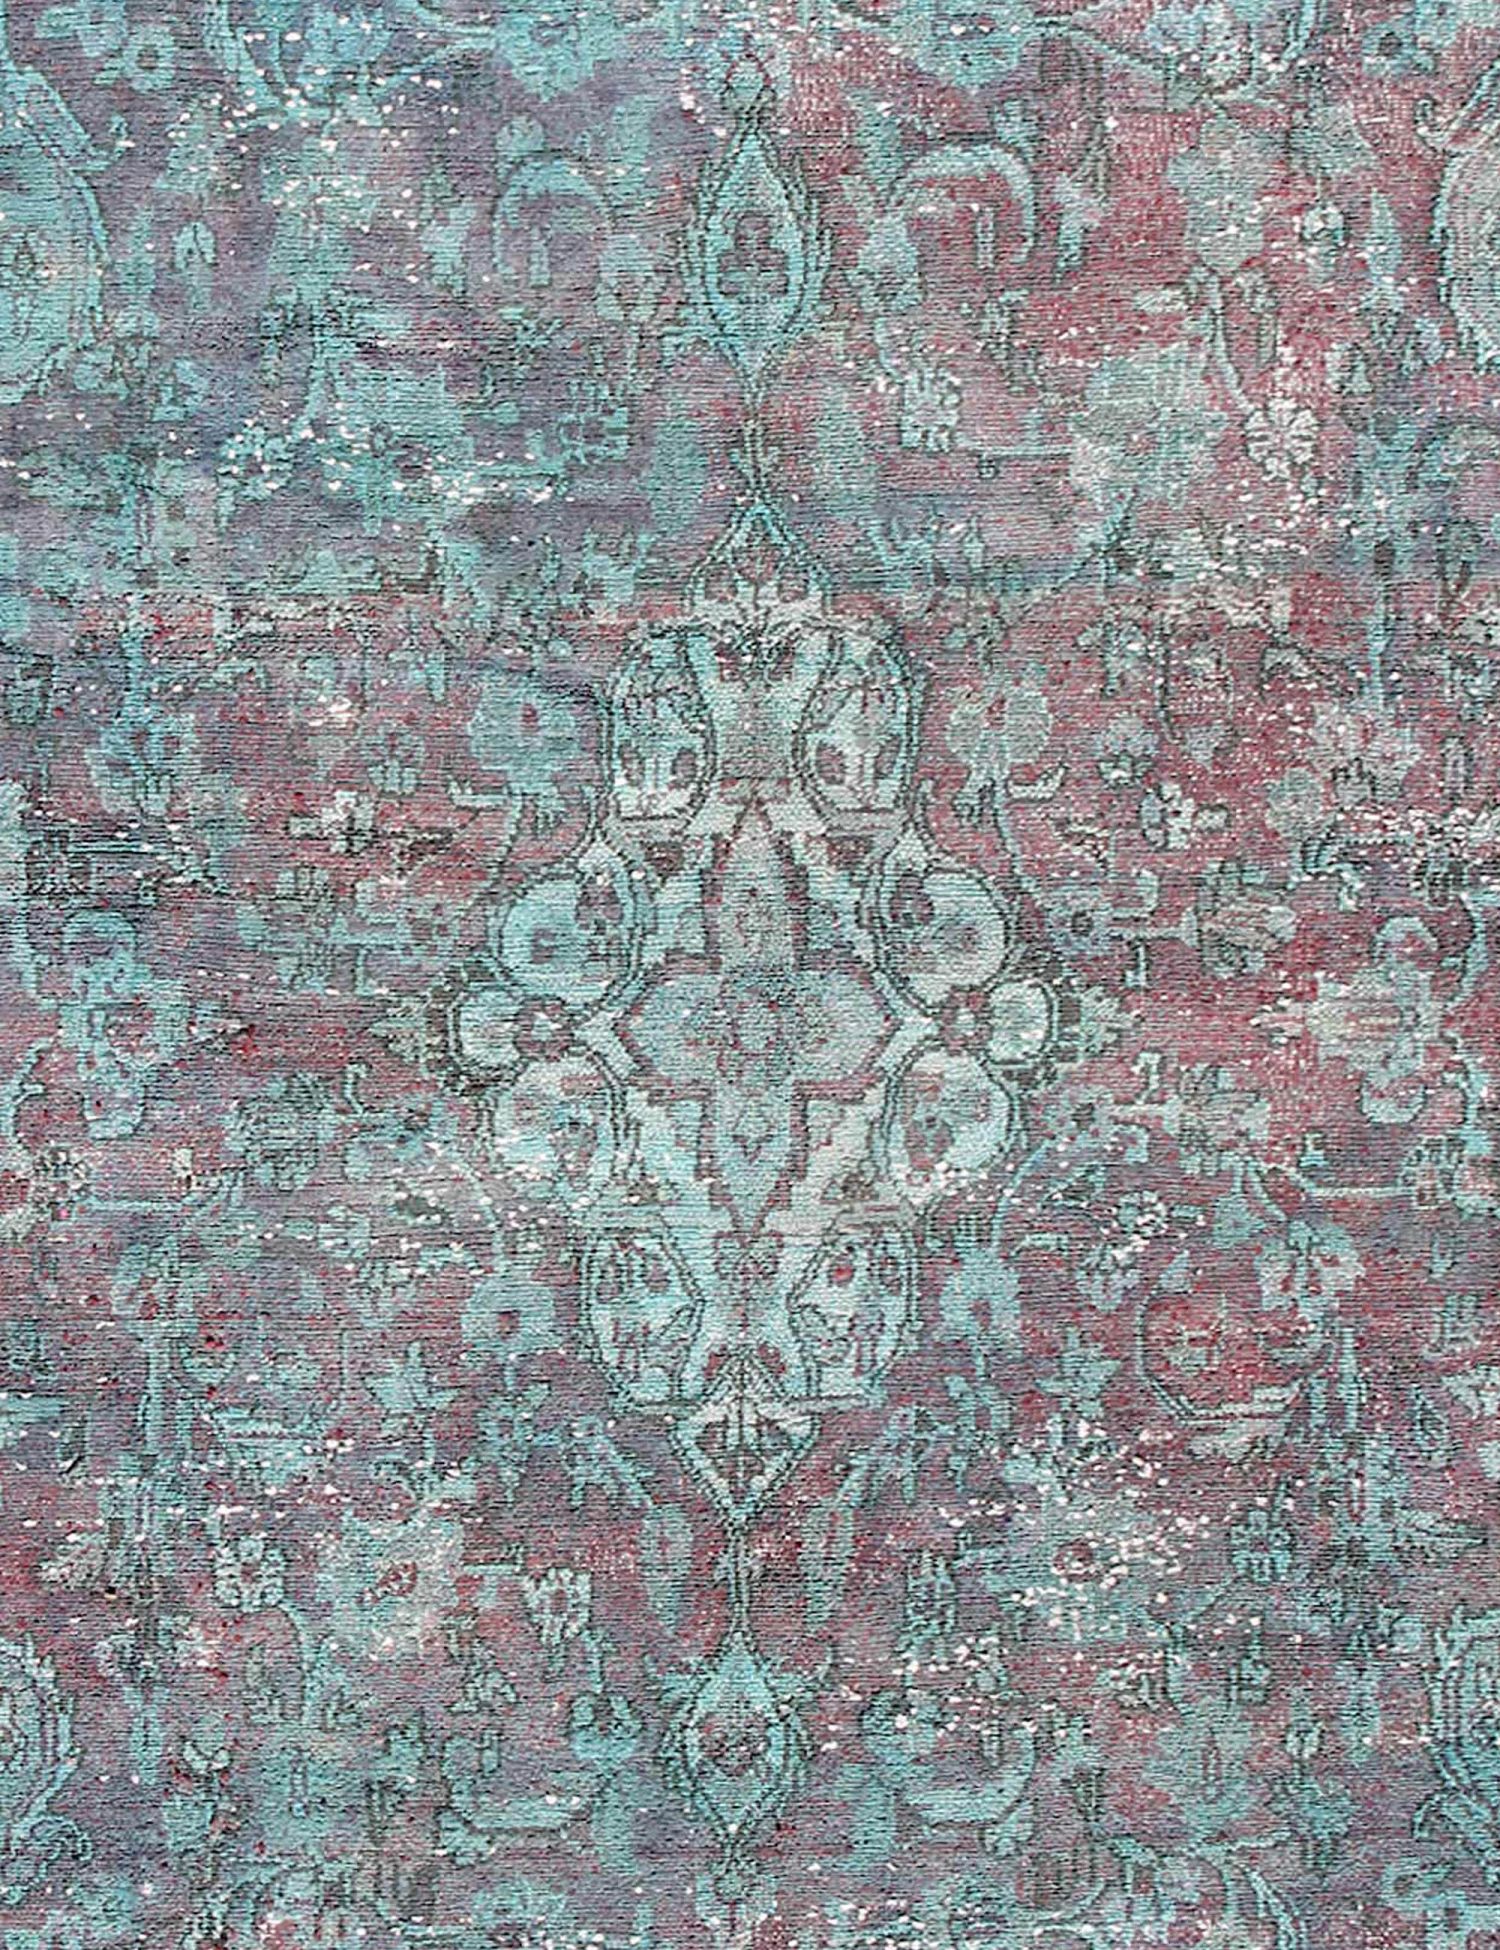 Persischer Vintage Teppich  türkis <br/>267 x 183 cm